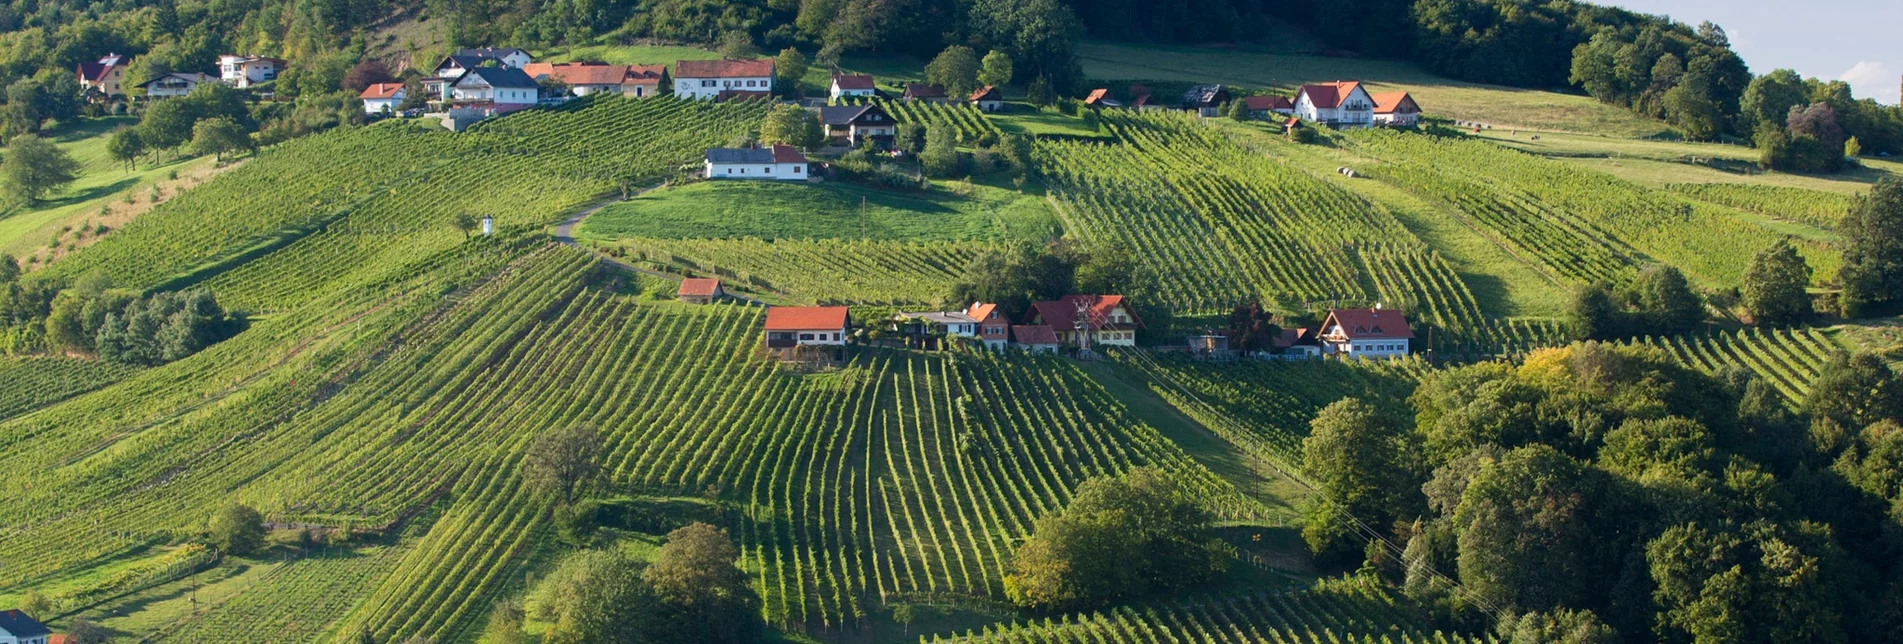 Wanderung Etappe 34 Vom Gletscher zum Wein Nordroute Bad Gleichenberg - Klöch - Touren-Impression #1 | © (c) Steiermark Tourismus